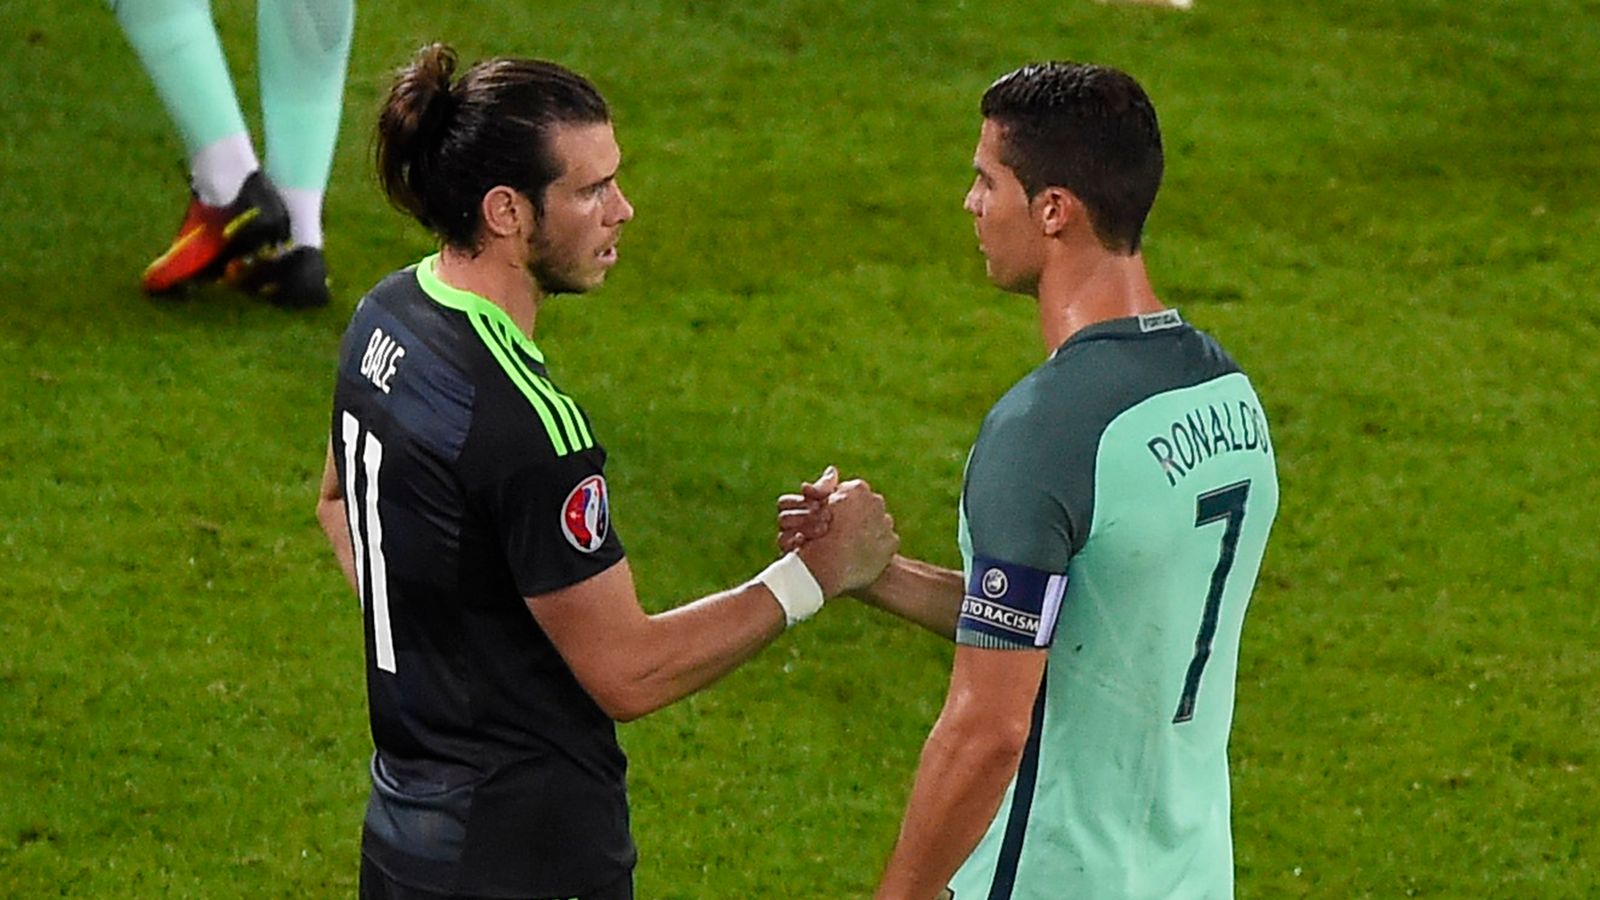 Cristiano Ronaldo v Gareth Bale: Comparing their performances ...